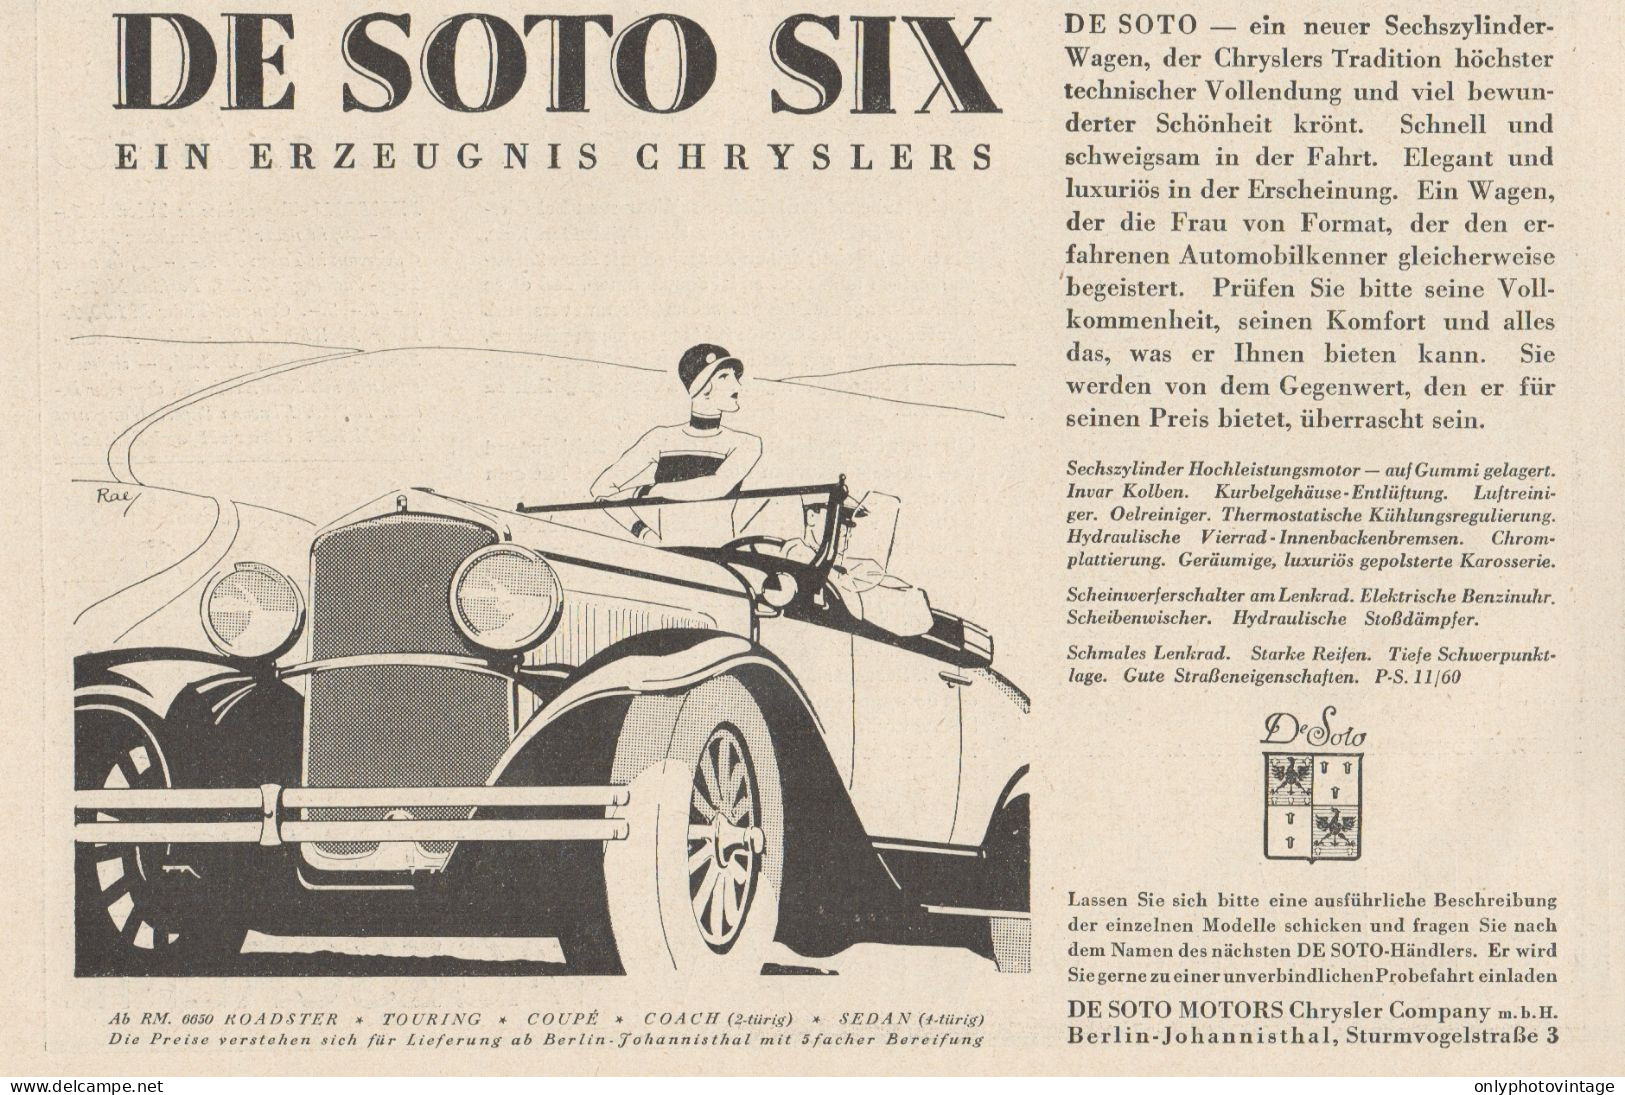 Automobile DE SOTO SIX Chrysler - Pubblicità D'epoca - 1929 Old Advert - Publicidad